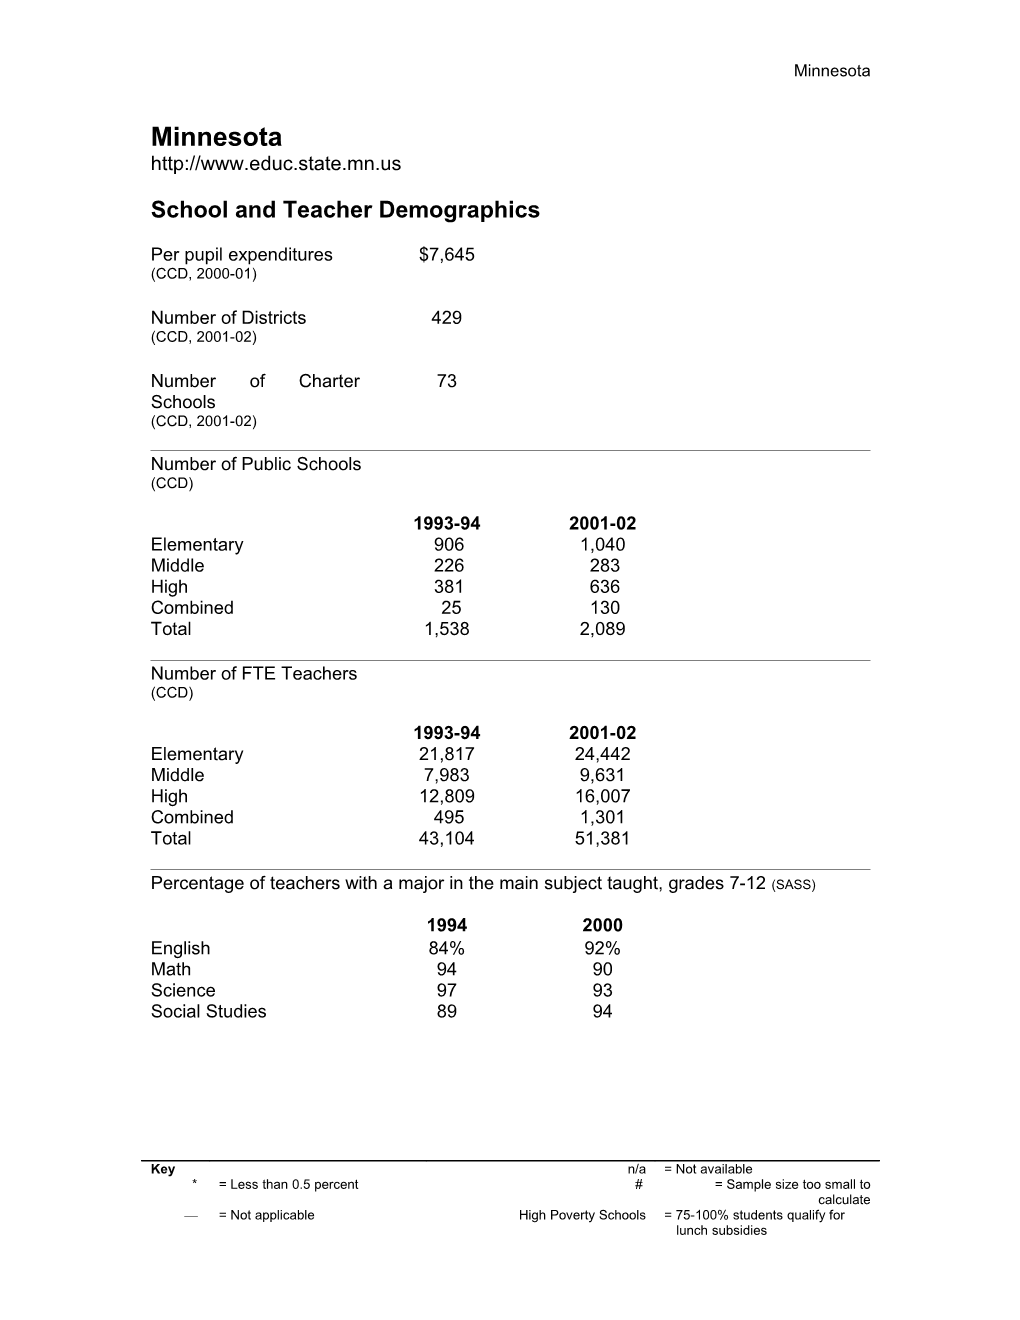 School and Teacher Demographics s1